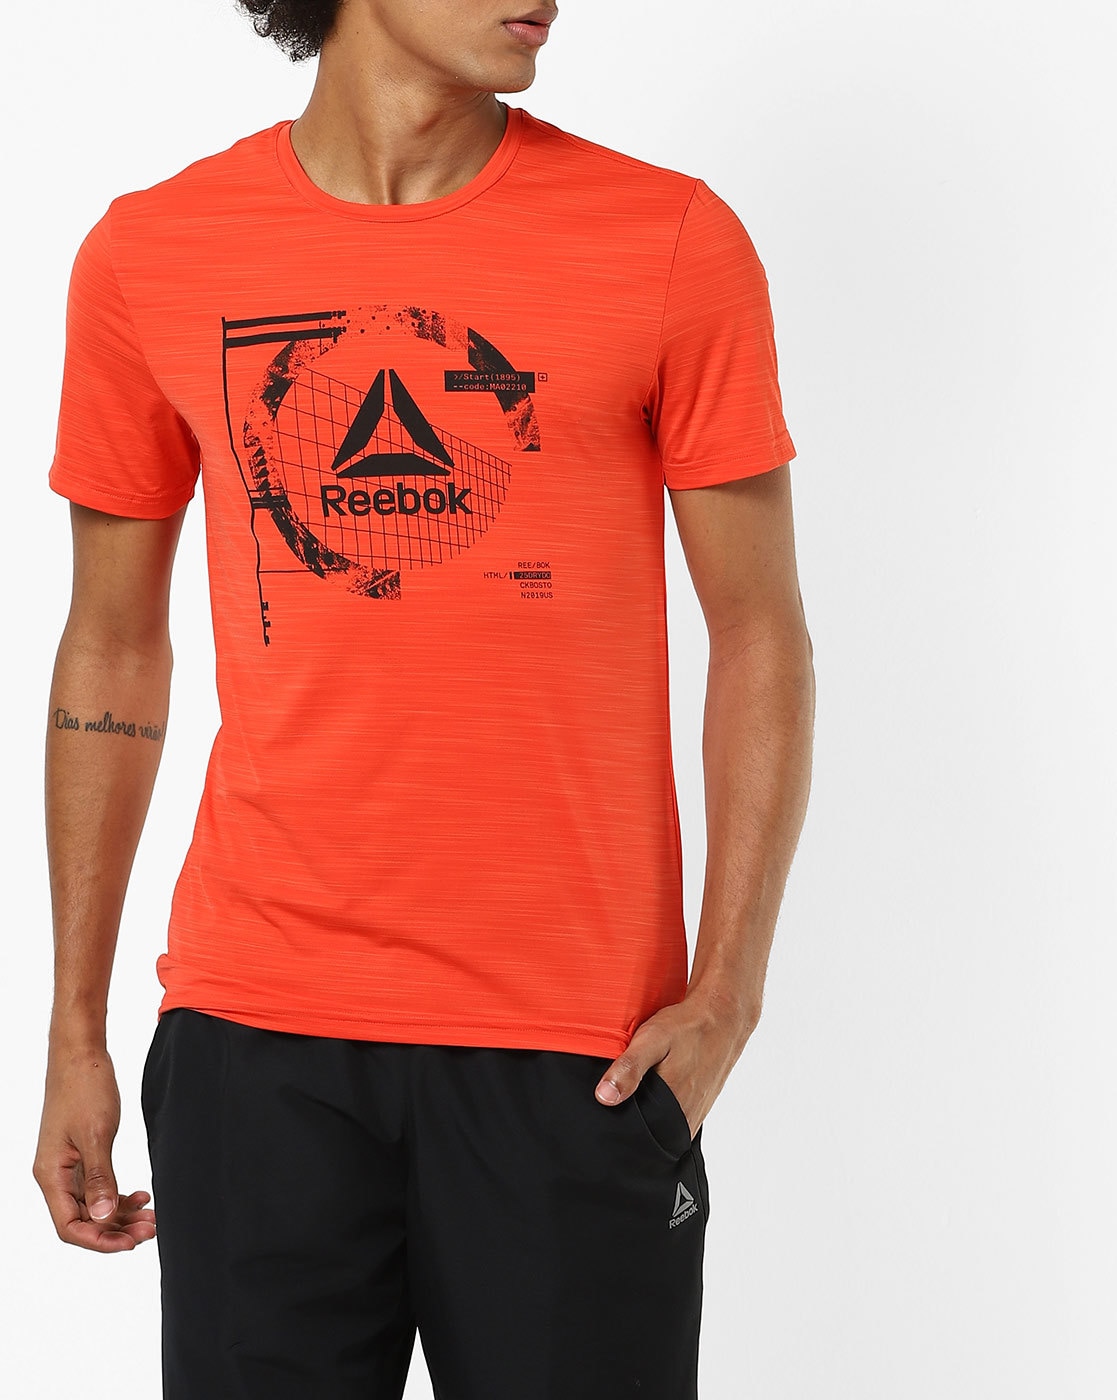 orange reebok shirt